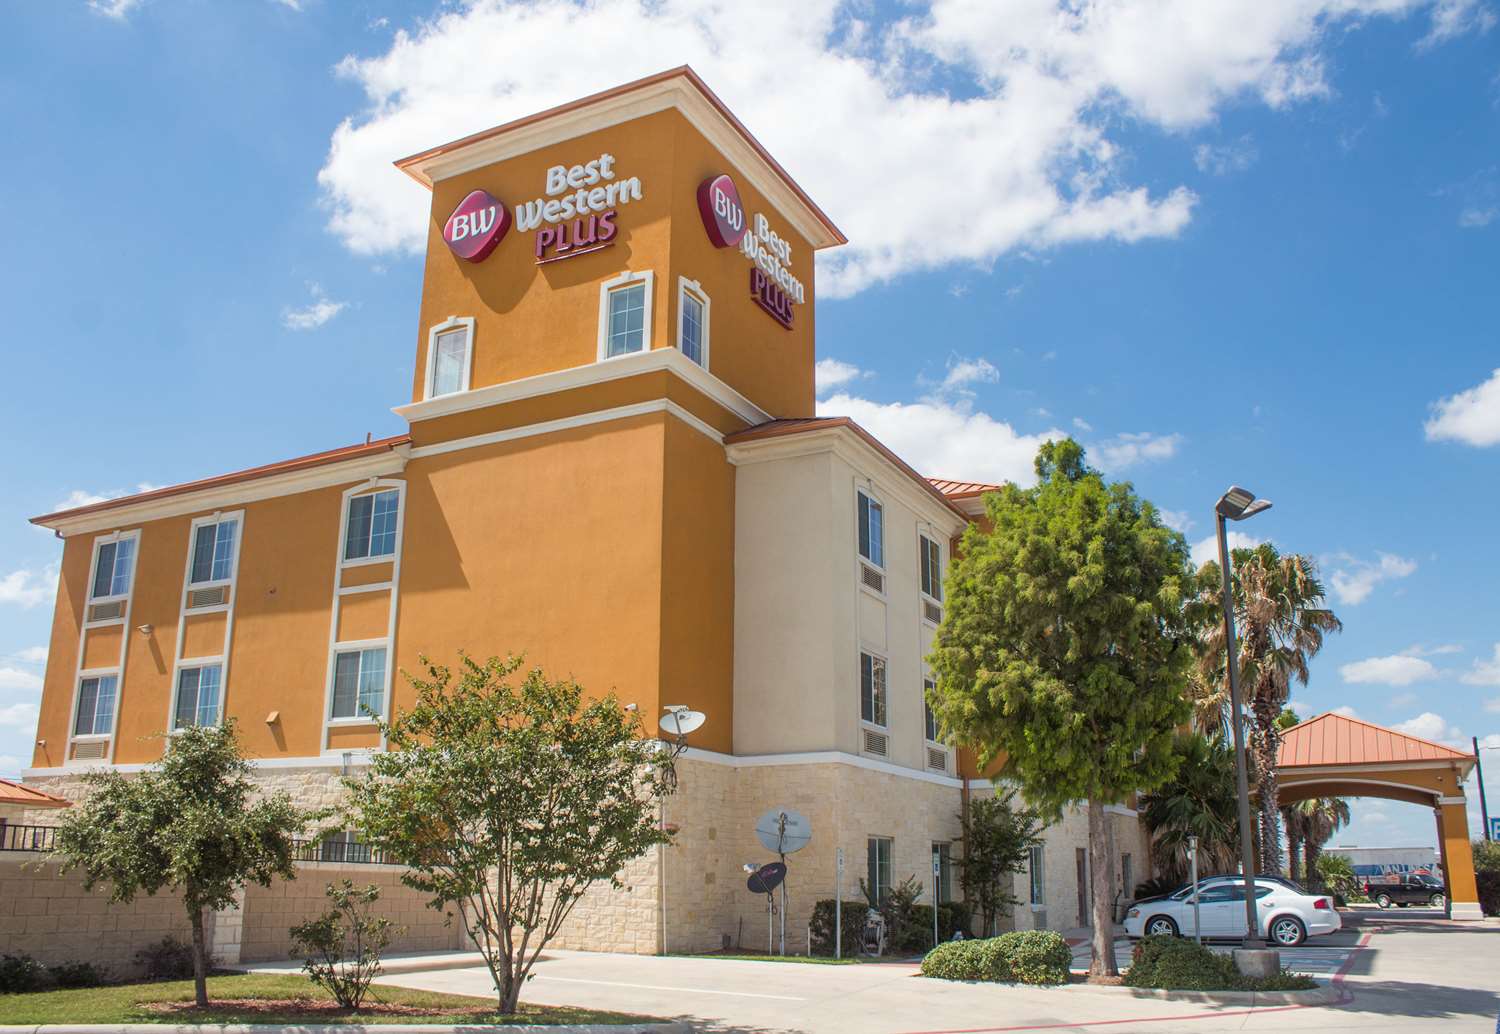 Hotel in San Antonio, TX East - Best Western Plus